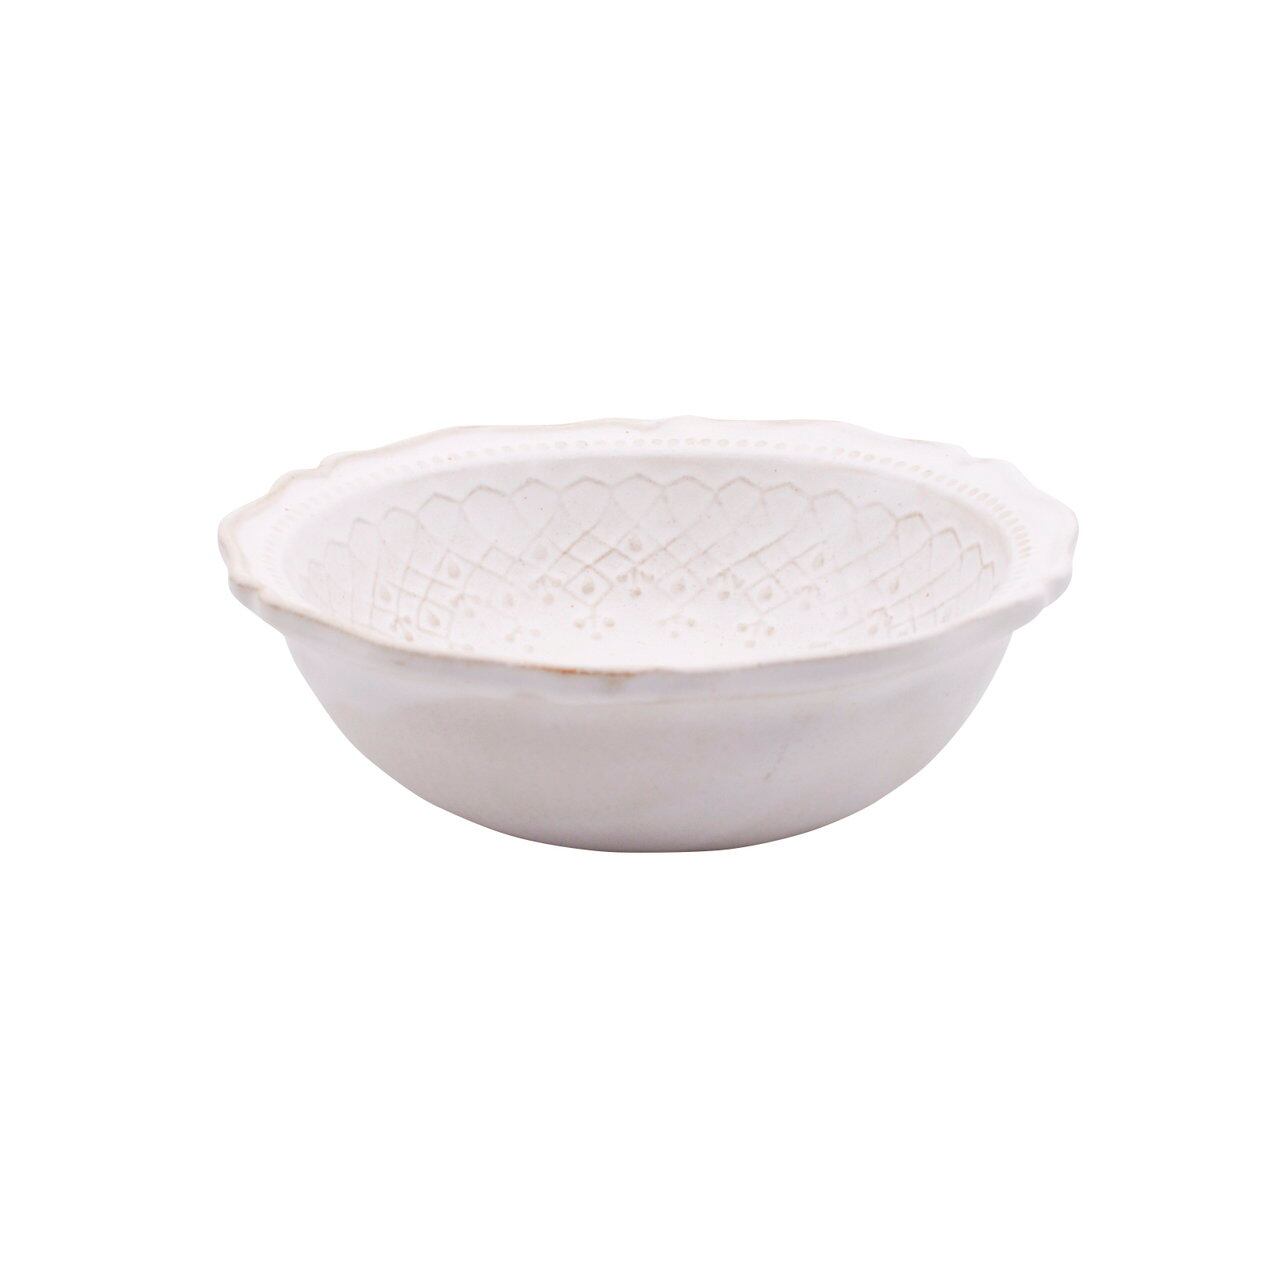 益子焼 わかさま陶芸 「フレンチレース」 ボウル 鉢 皿 S 約14cm ホワイト 256050